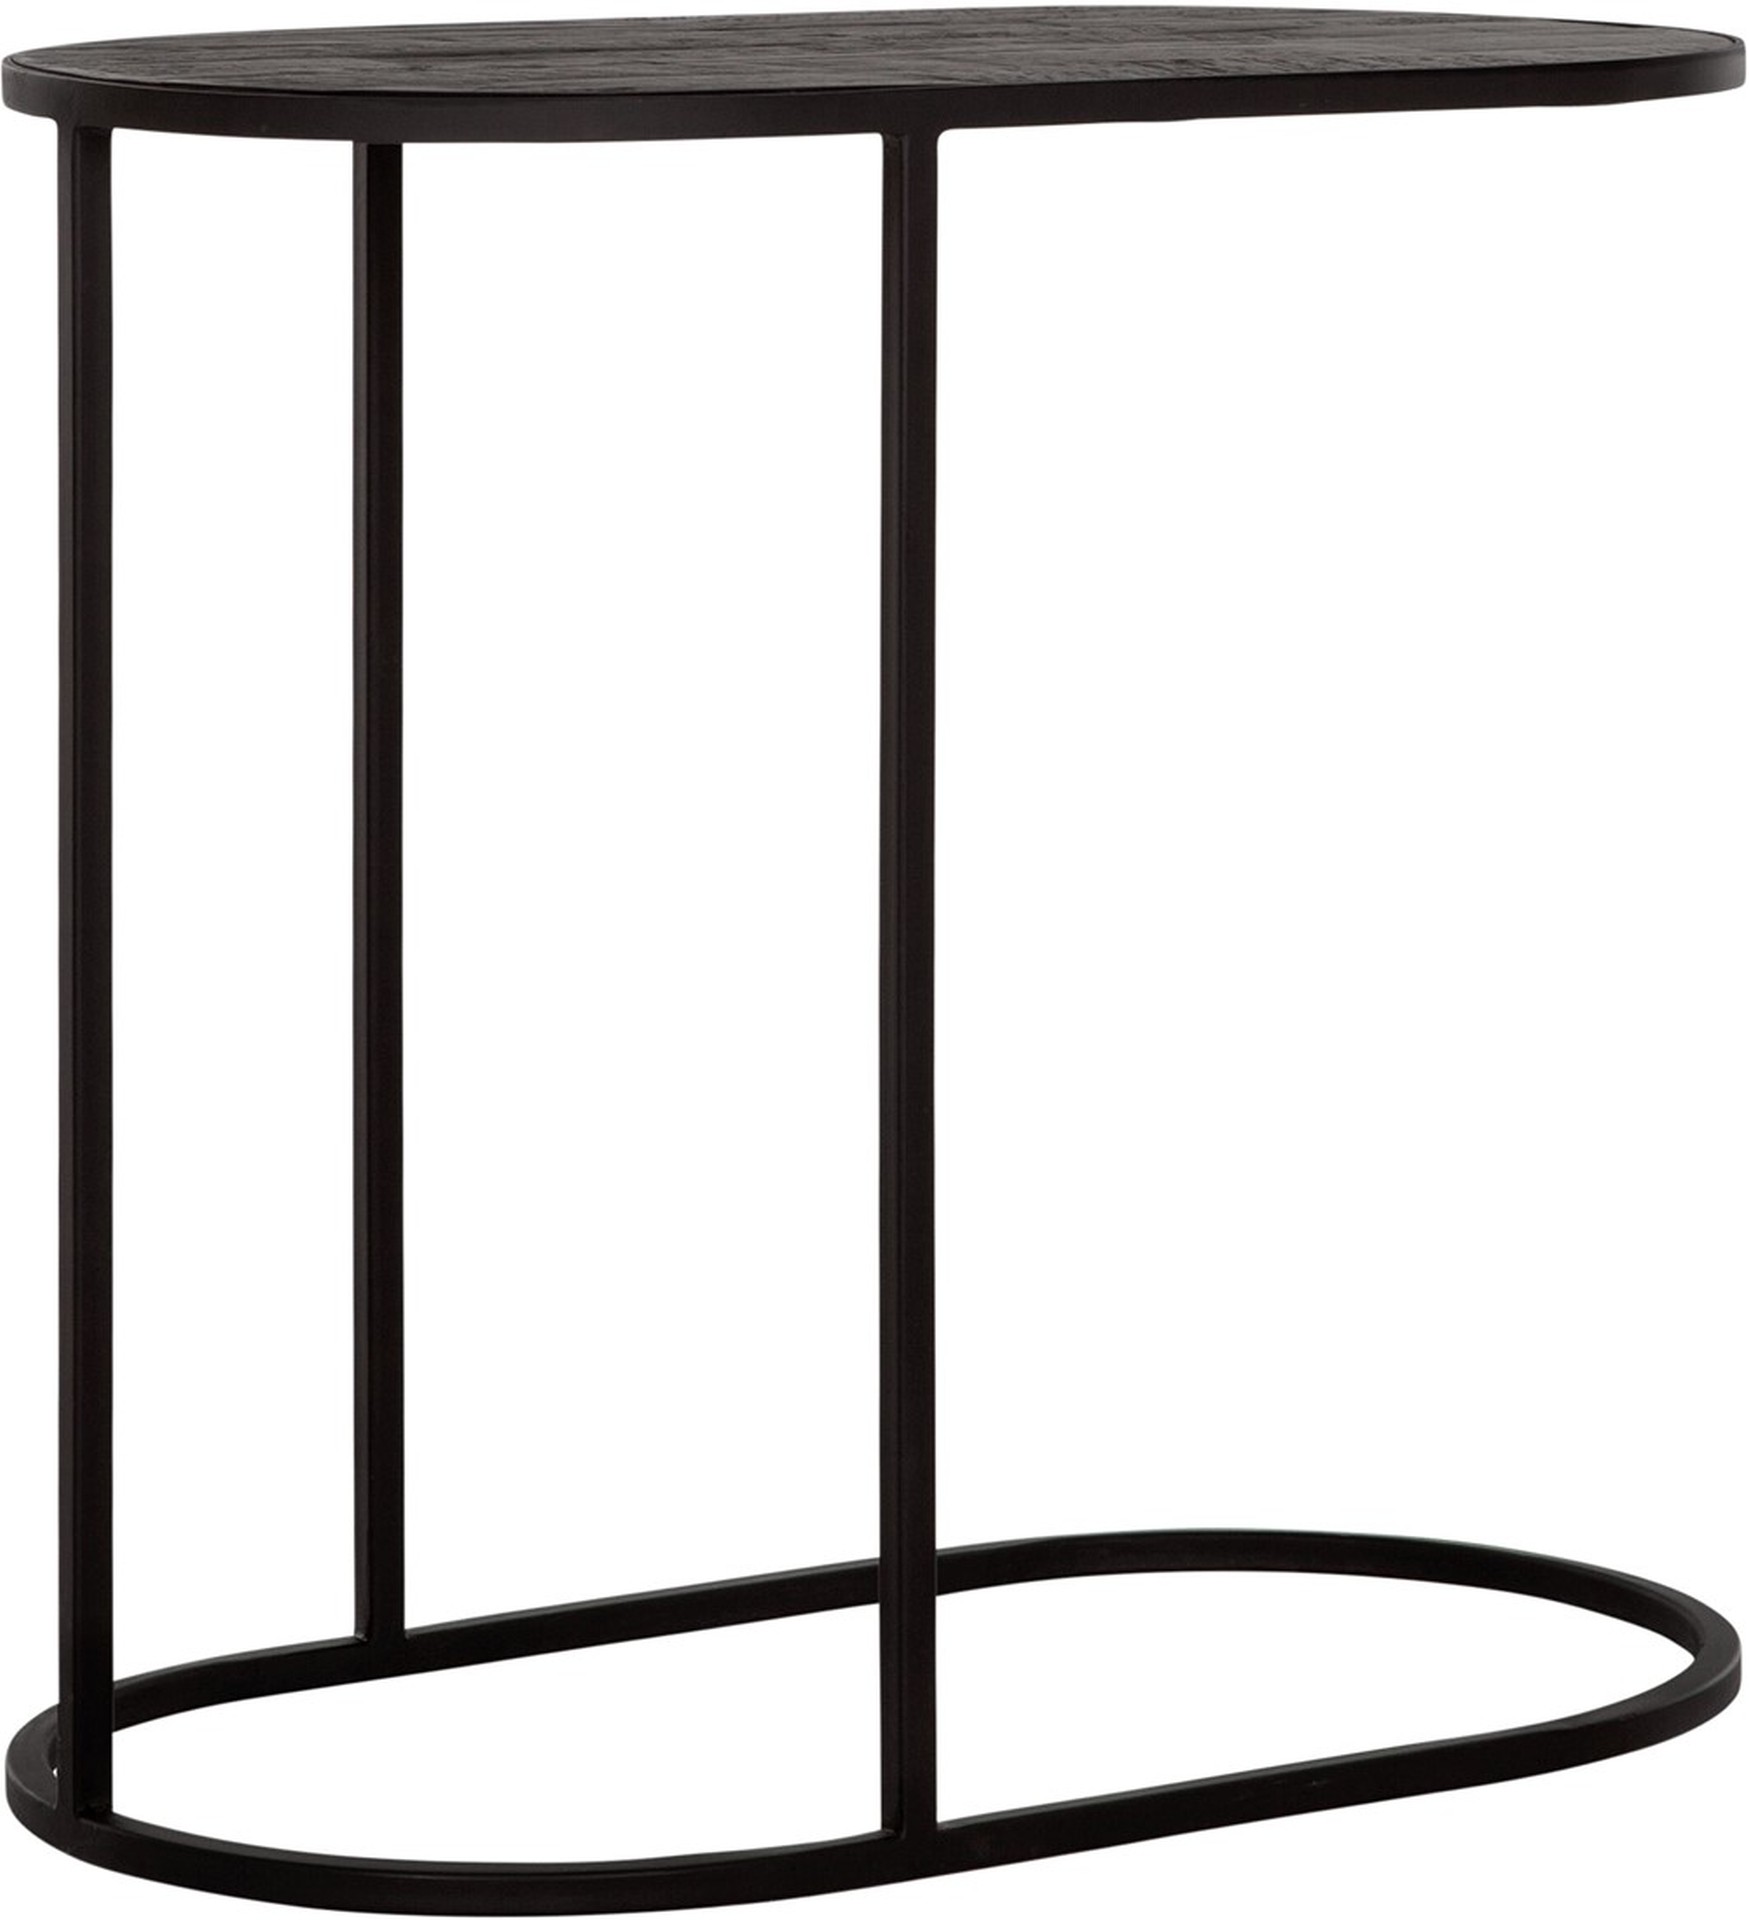 Der Beistelltisch Terra wurde aus Teakholz gefertigt, welches einen schwarzen Farbton besitzt. Das Gestell ist aus Metall uns ist Schwarz.Der Tisch überzeugt mit seinem massivem aber auch modernen Design.